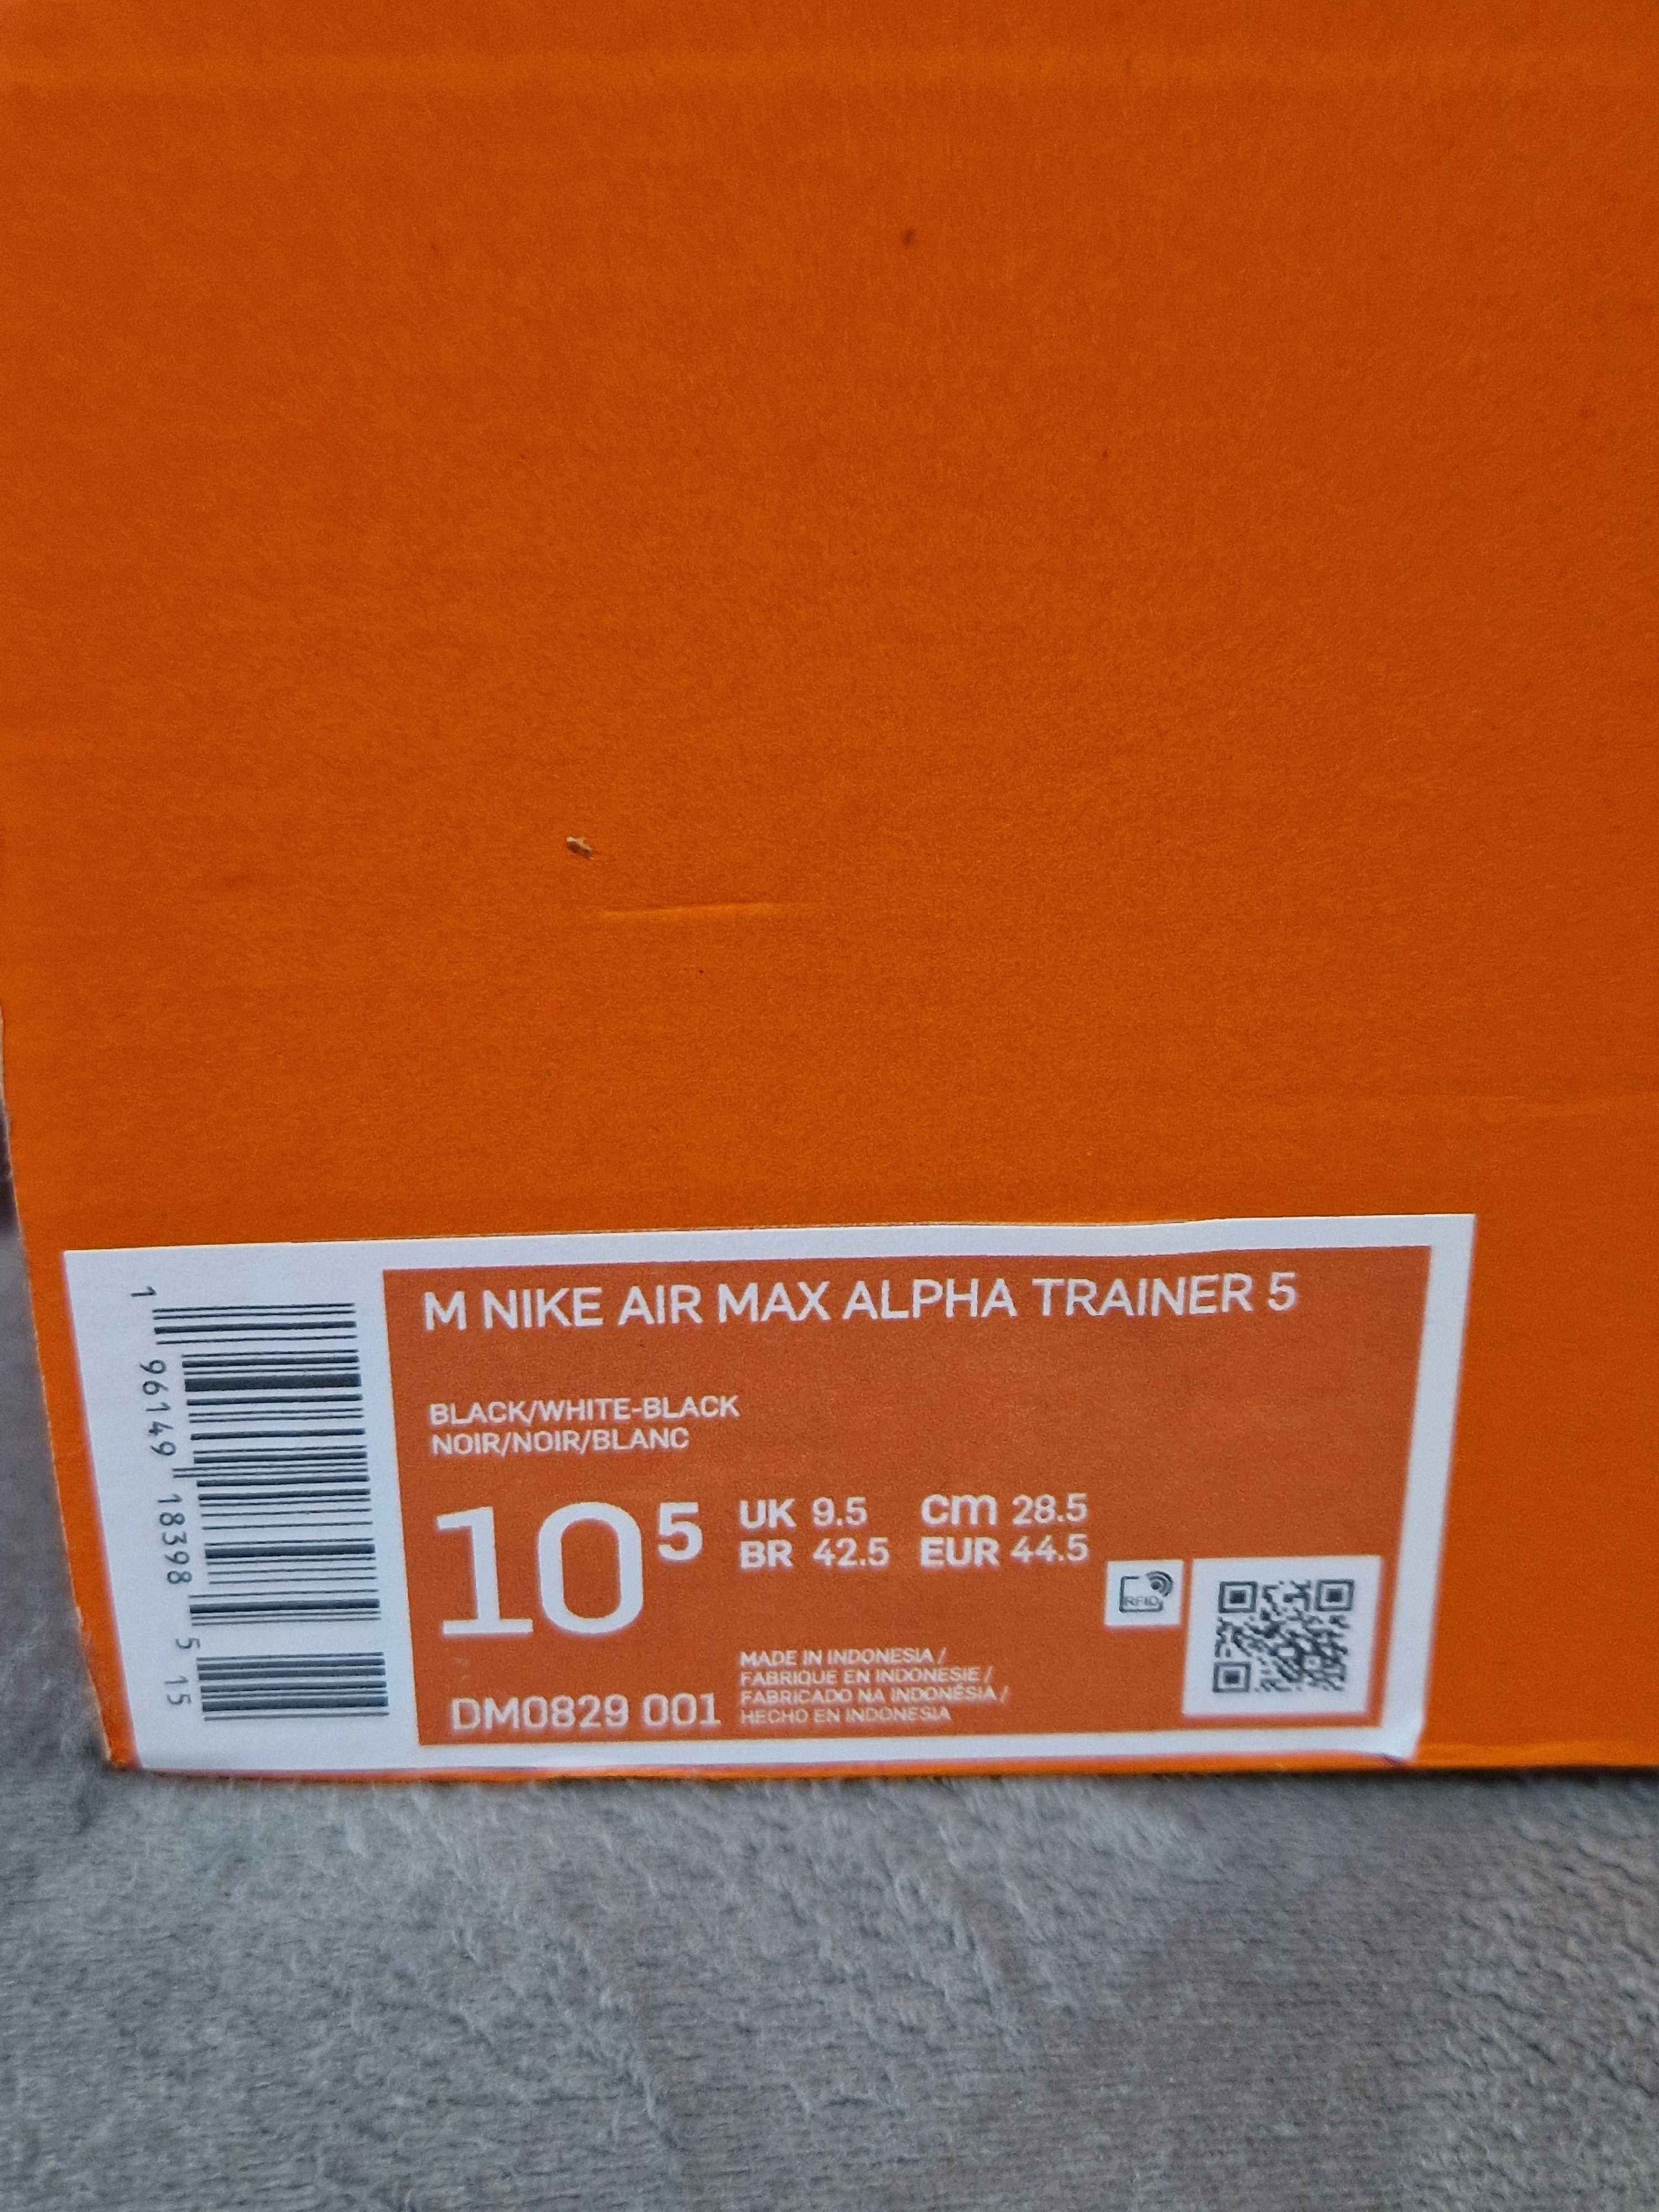 Nike Air Max Treiner 5, NOWE, 44,5